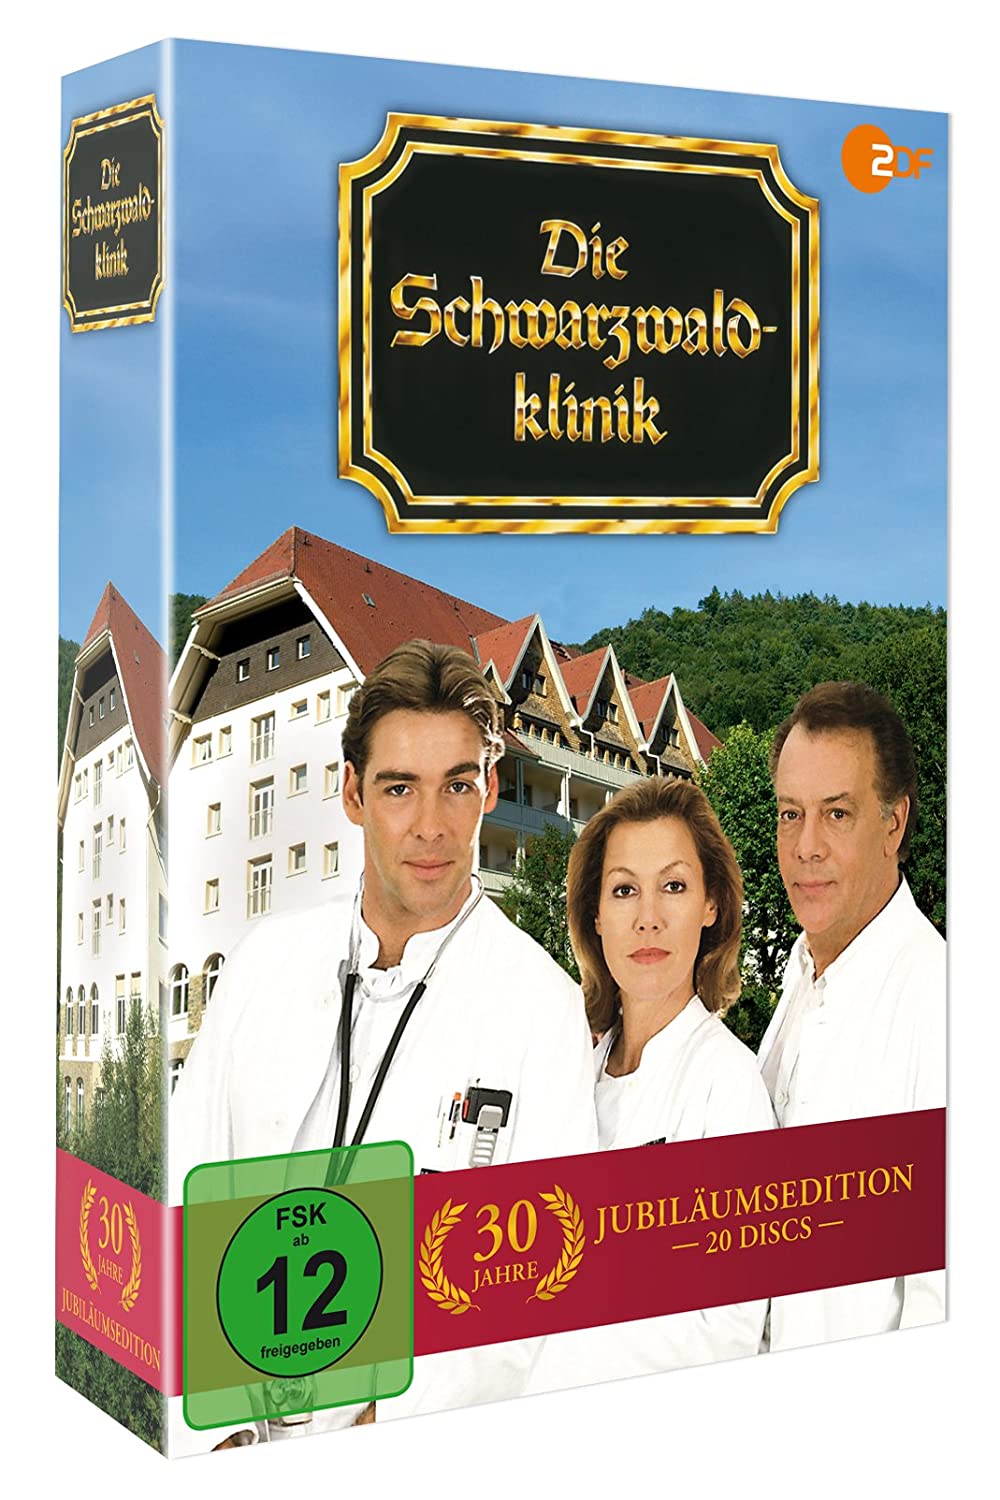 Die Schwarzwaldklinik - 30 Jahre Jubiläumsedition - 20 Discs